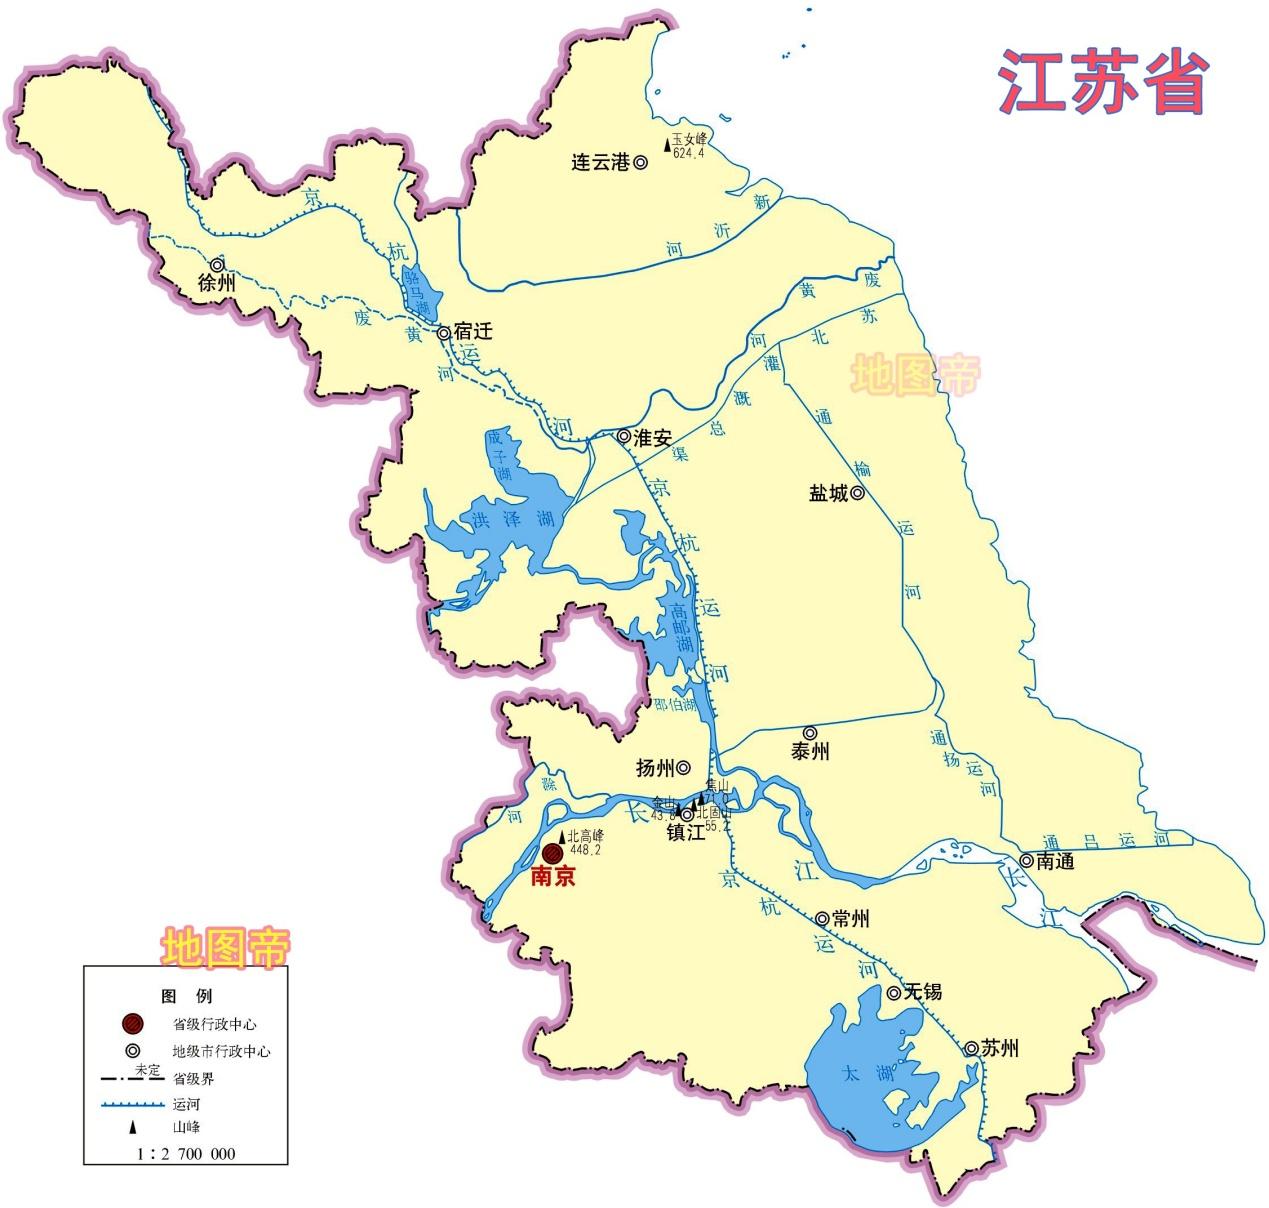 清朝顺治十八年(1661年),分江南省为江苏省和安徽省,迄今为止,江苏省